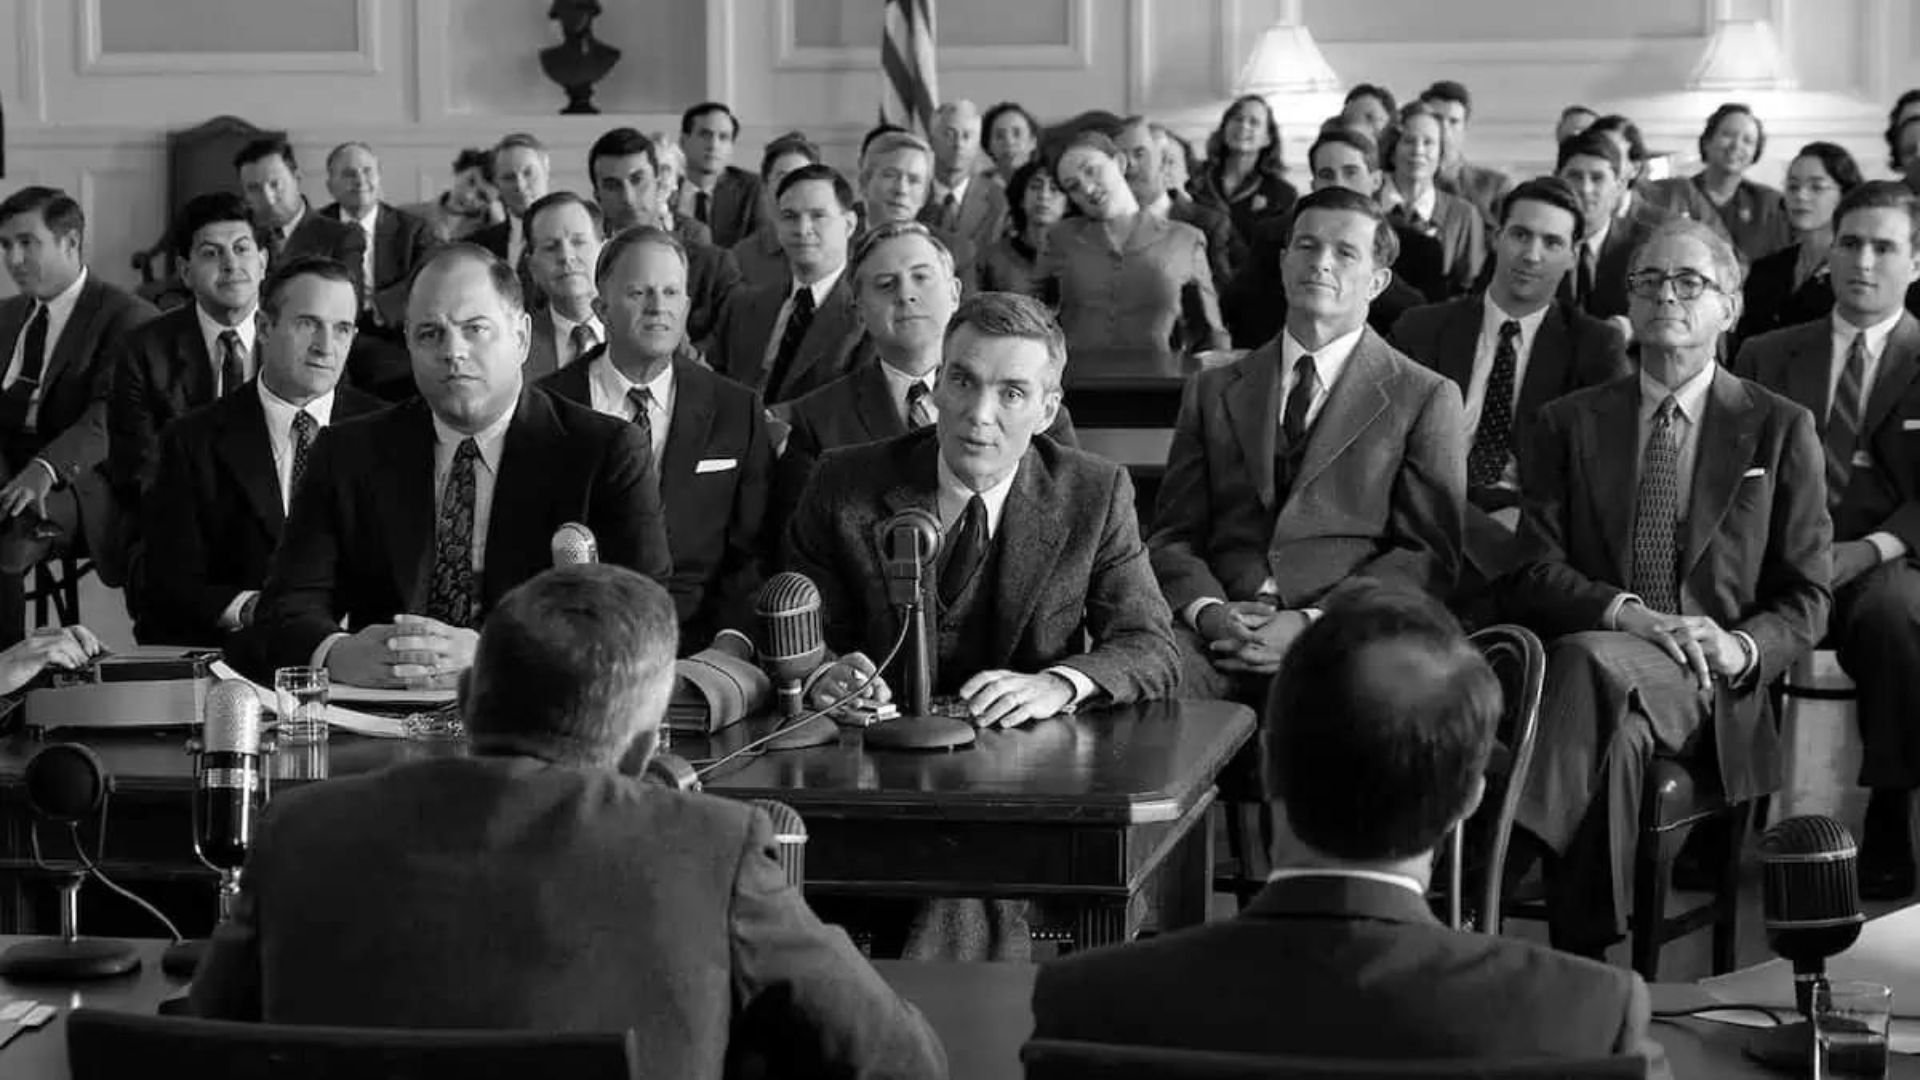 Cillian Murphy as J. Robert Oppenheimer in an official Congress hearing in 'Oppenheimer'